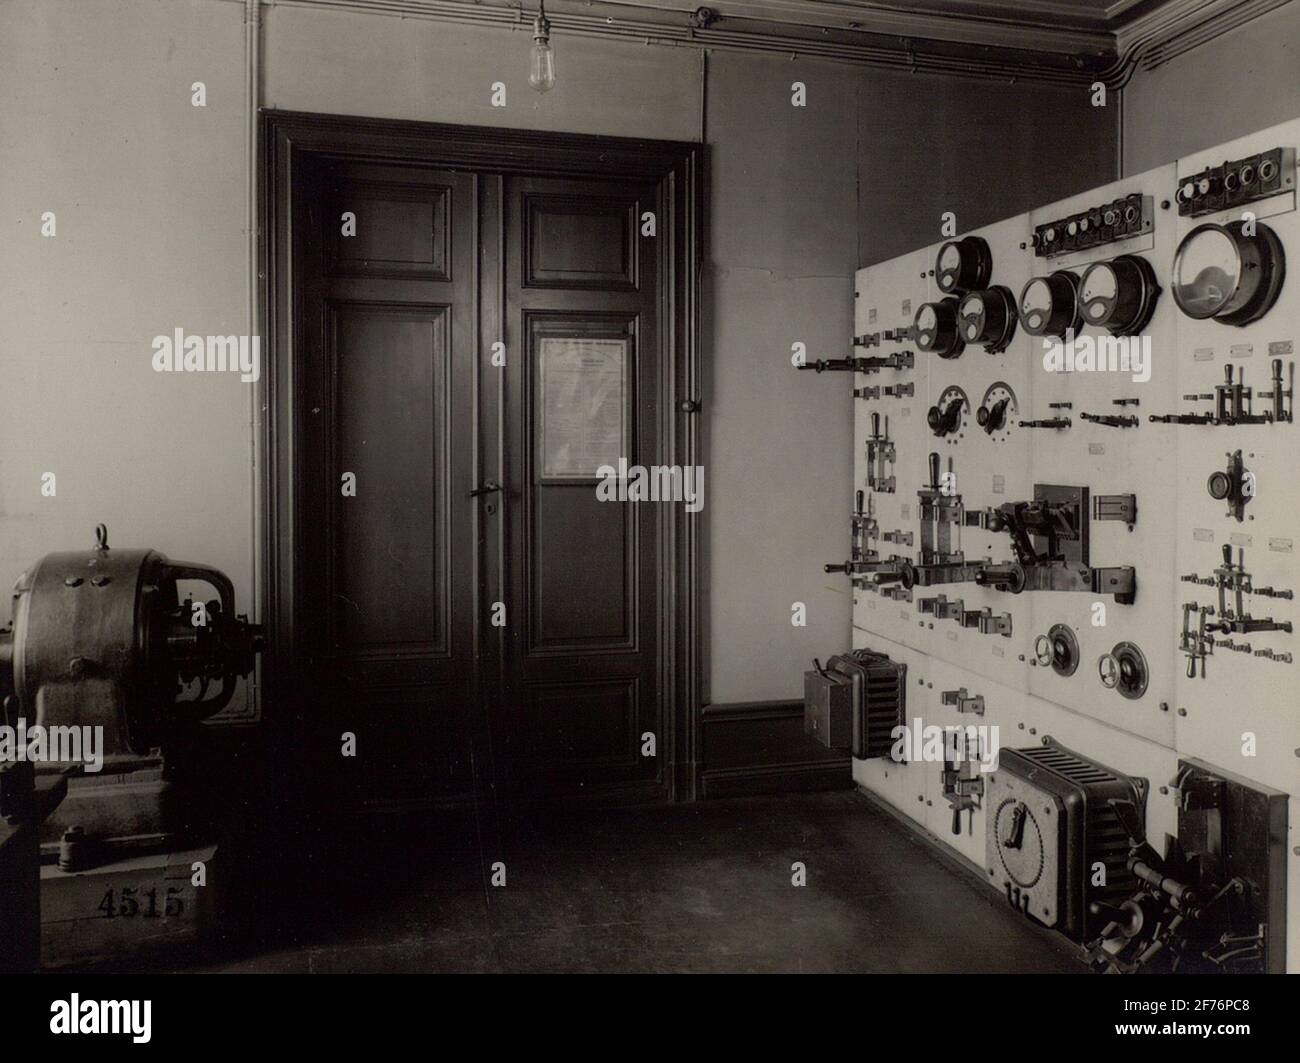 Skeppsbron 2. Sala macchine con asse da stiro. La stazione telefonica ponte 2 'la centrale' era operativa fino al 1929, quando fu automatizzata e trasferita a Jakobsbergsgatan 24. Foto Stock